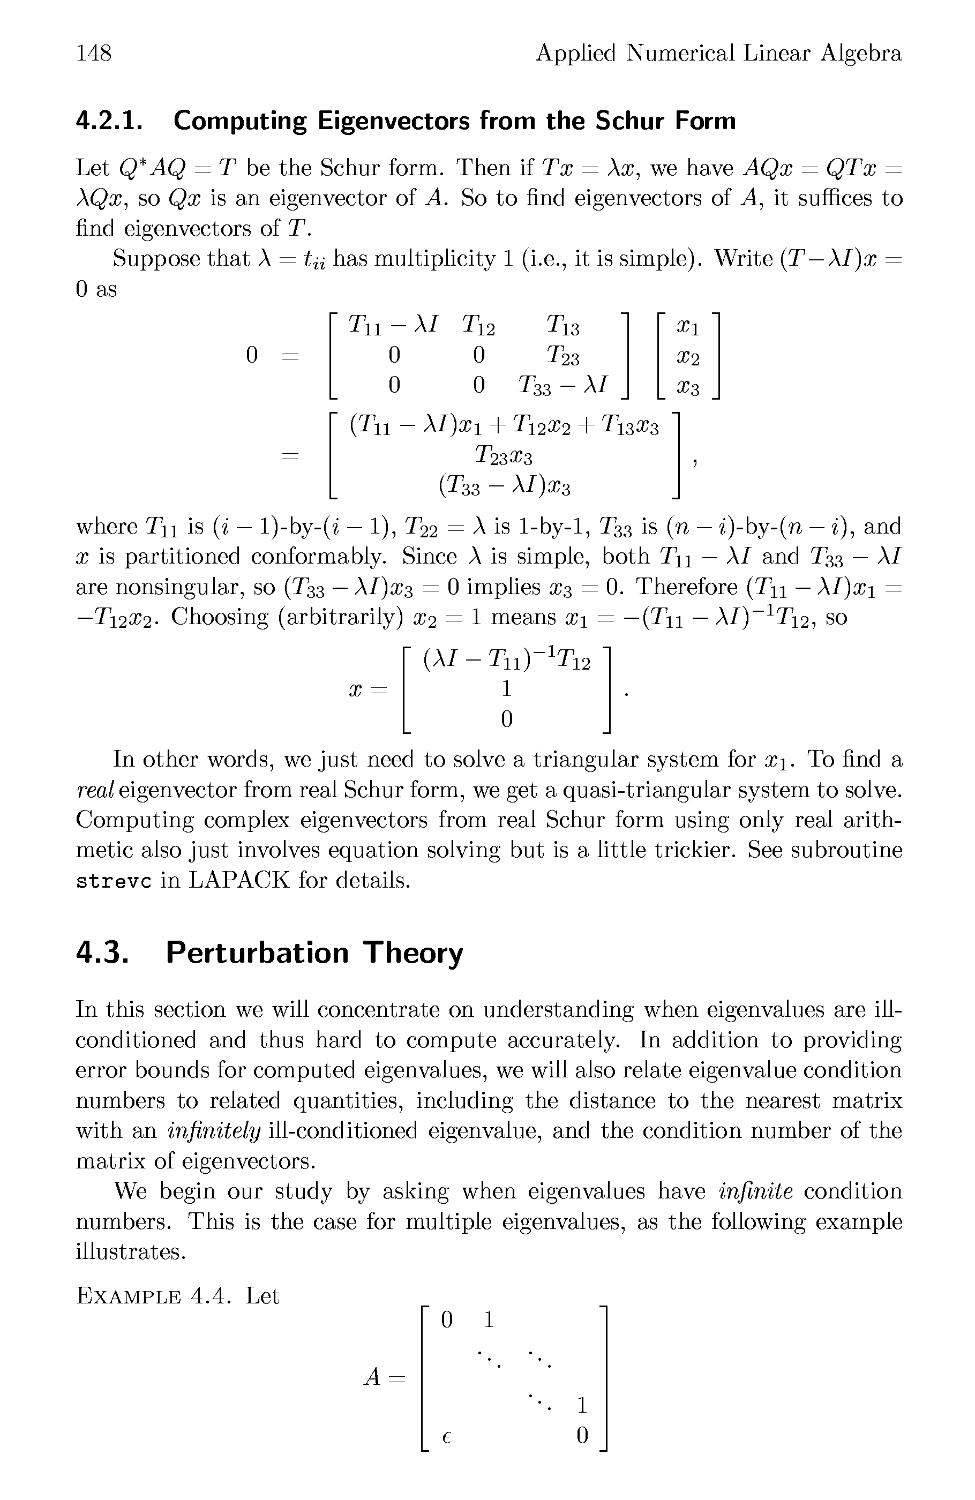 4.3 Perturbation Theory